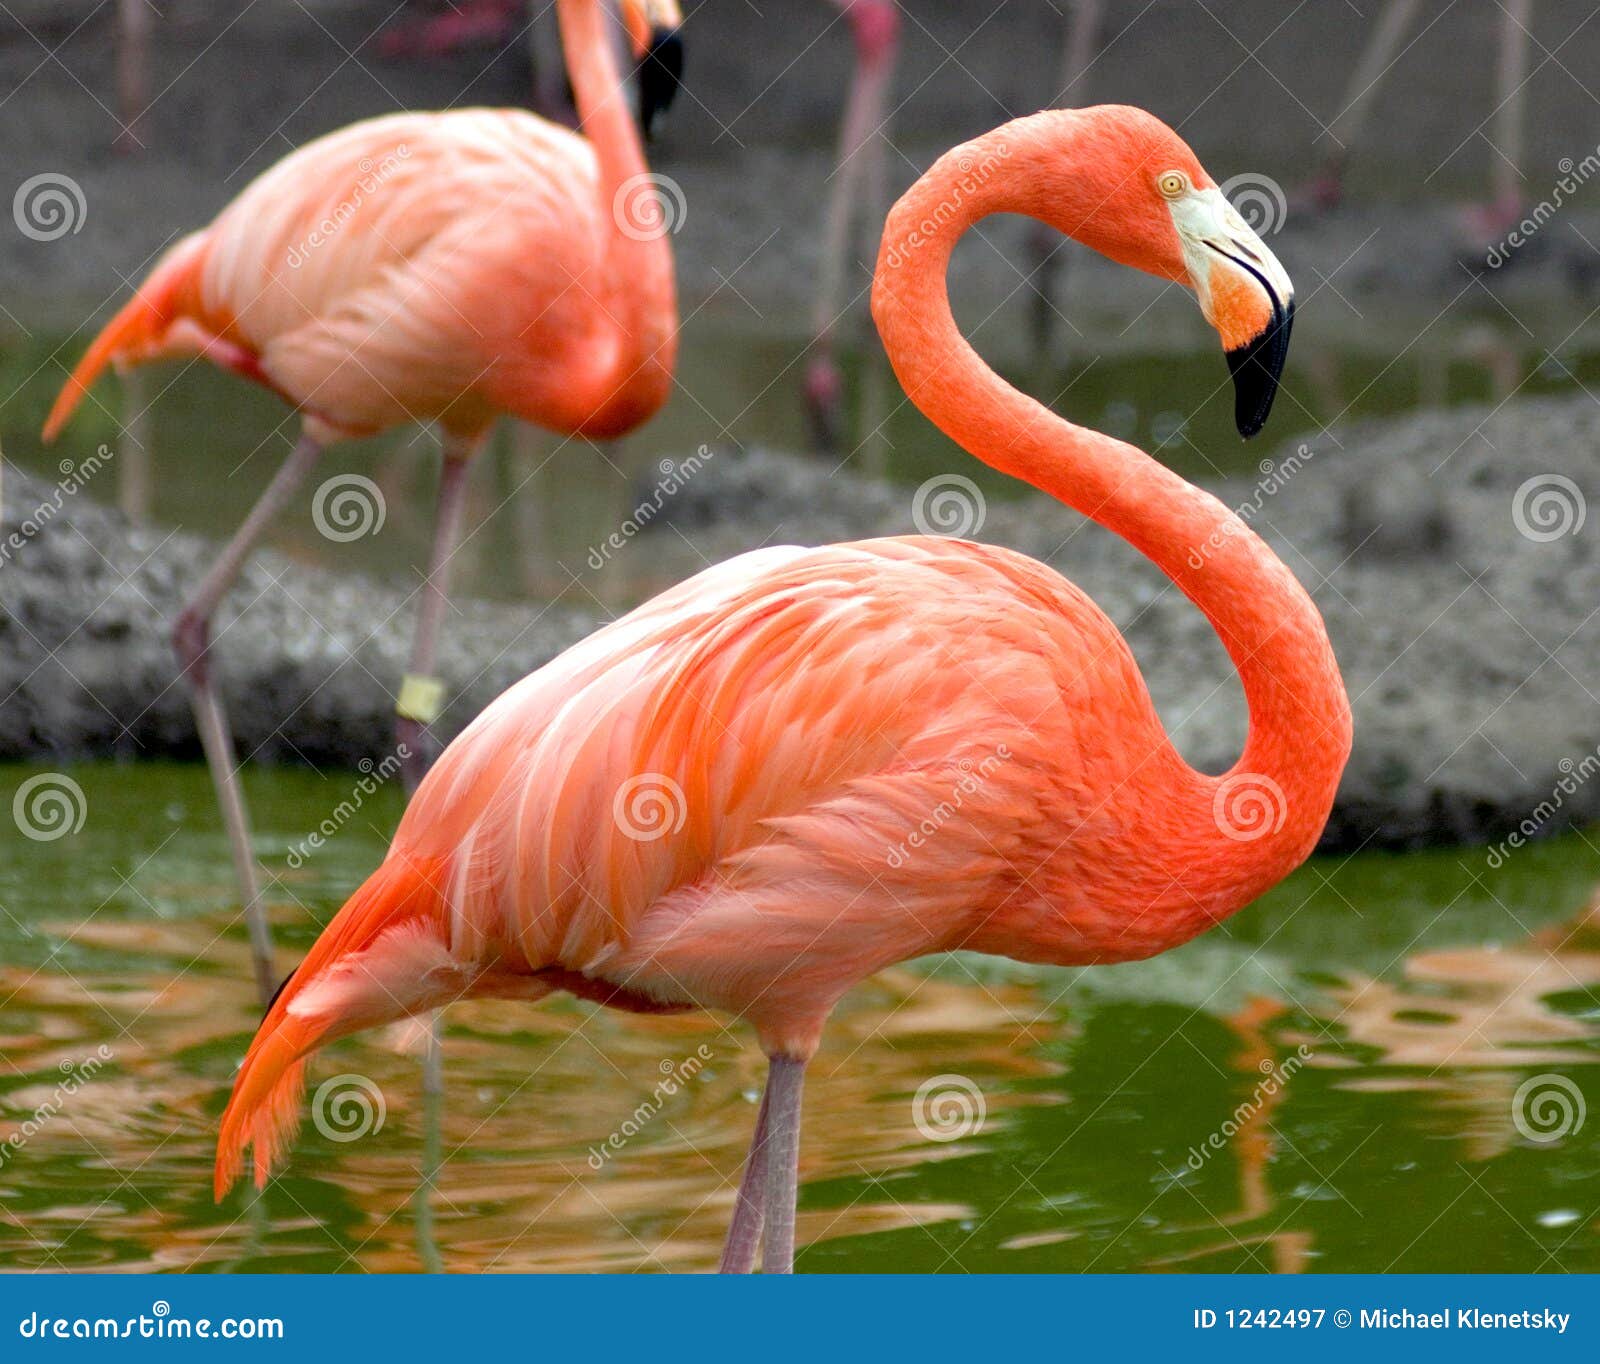 flamingo profile